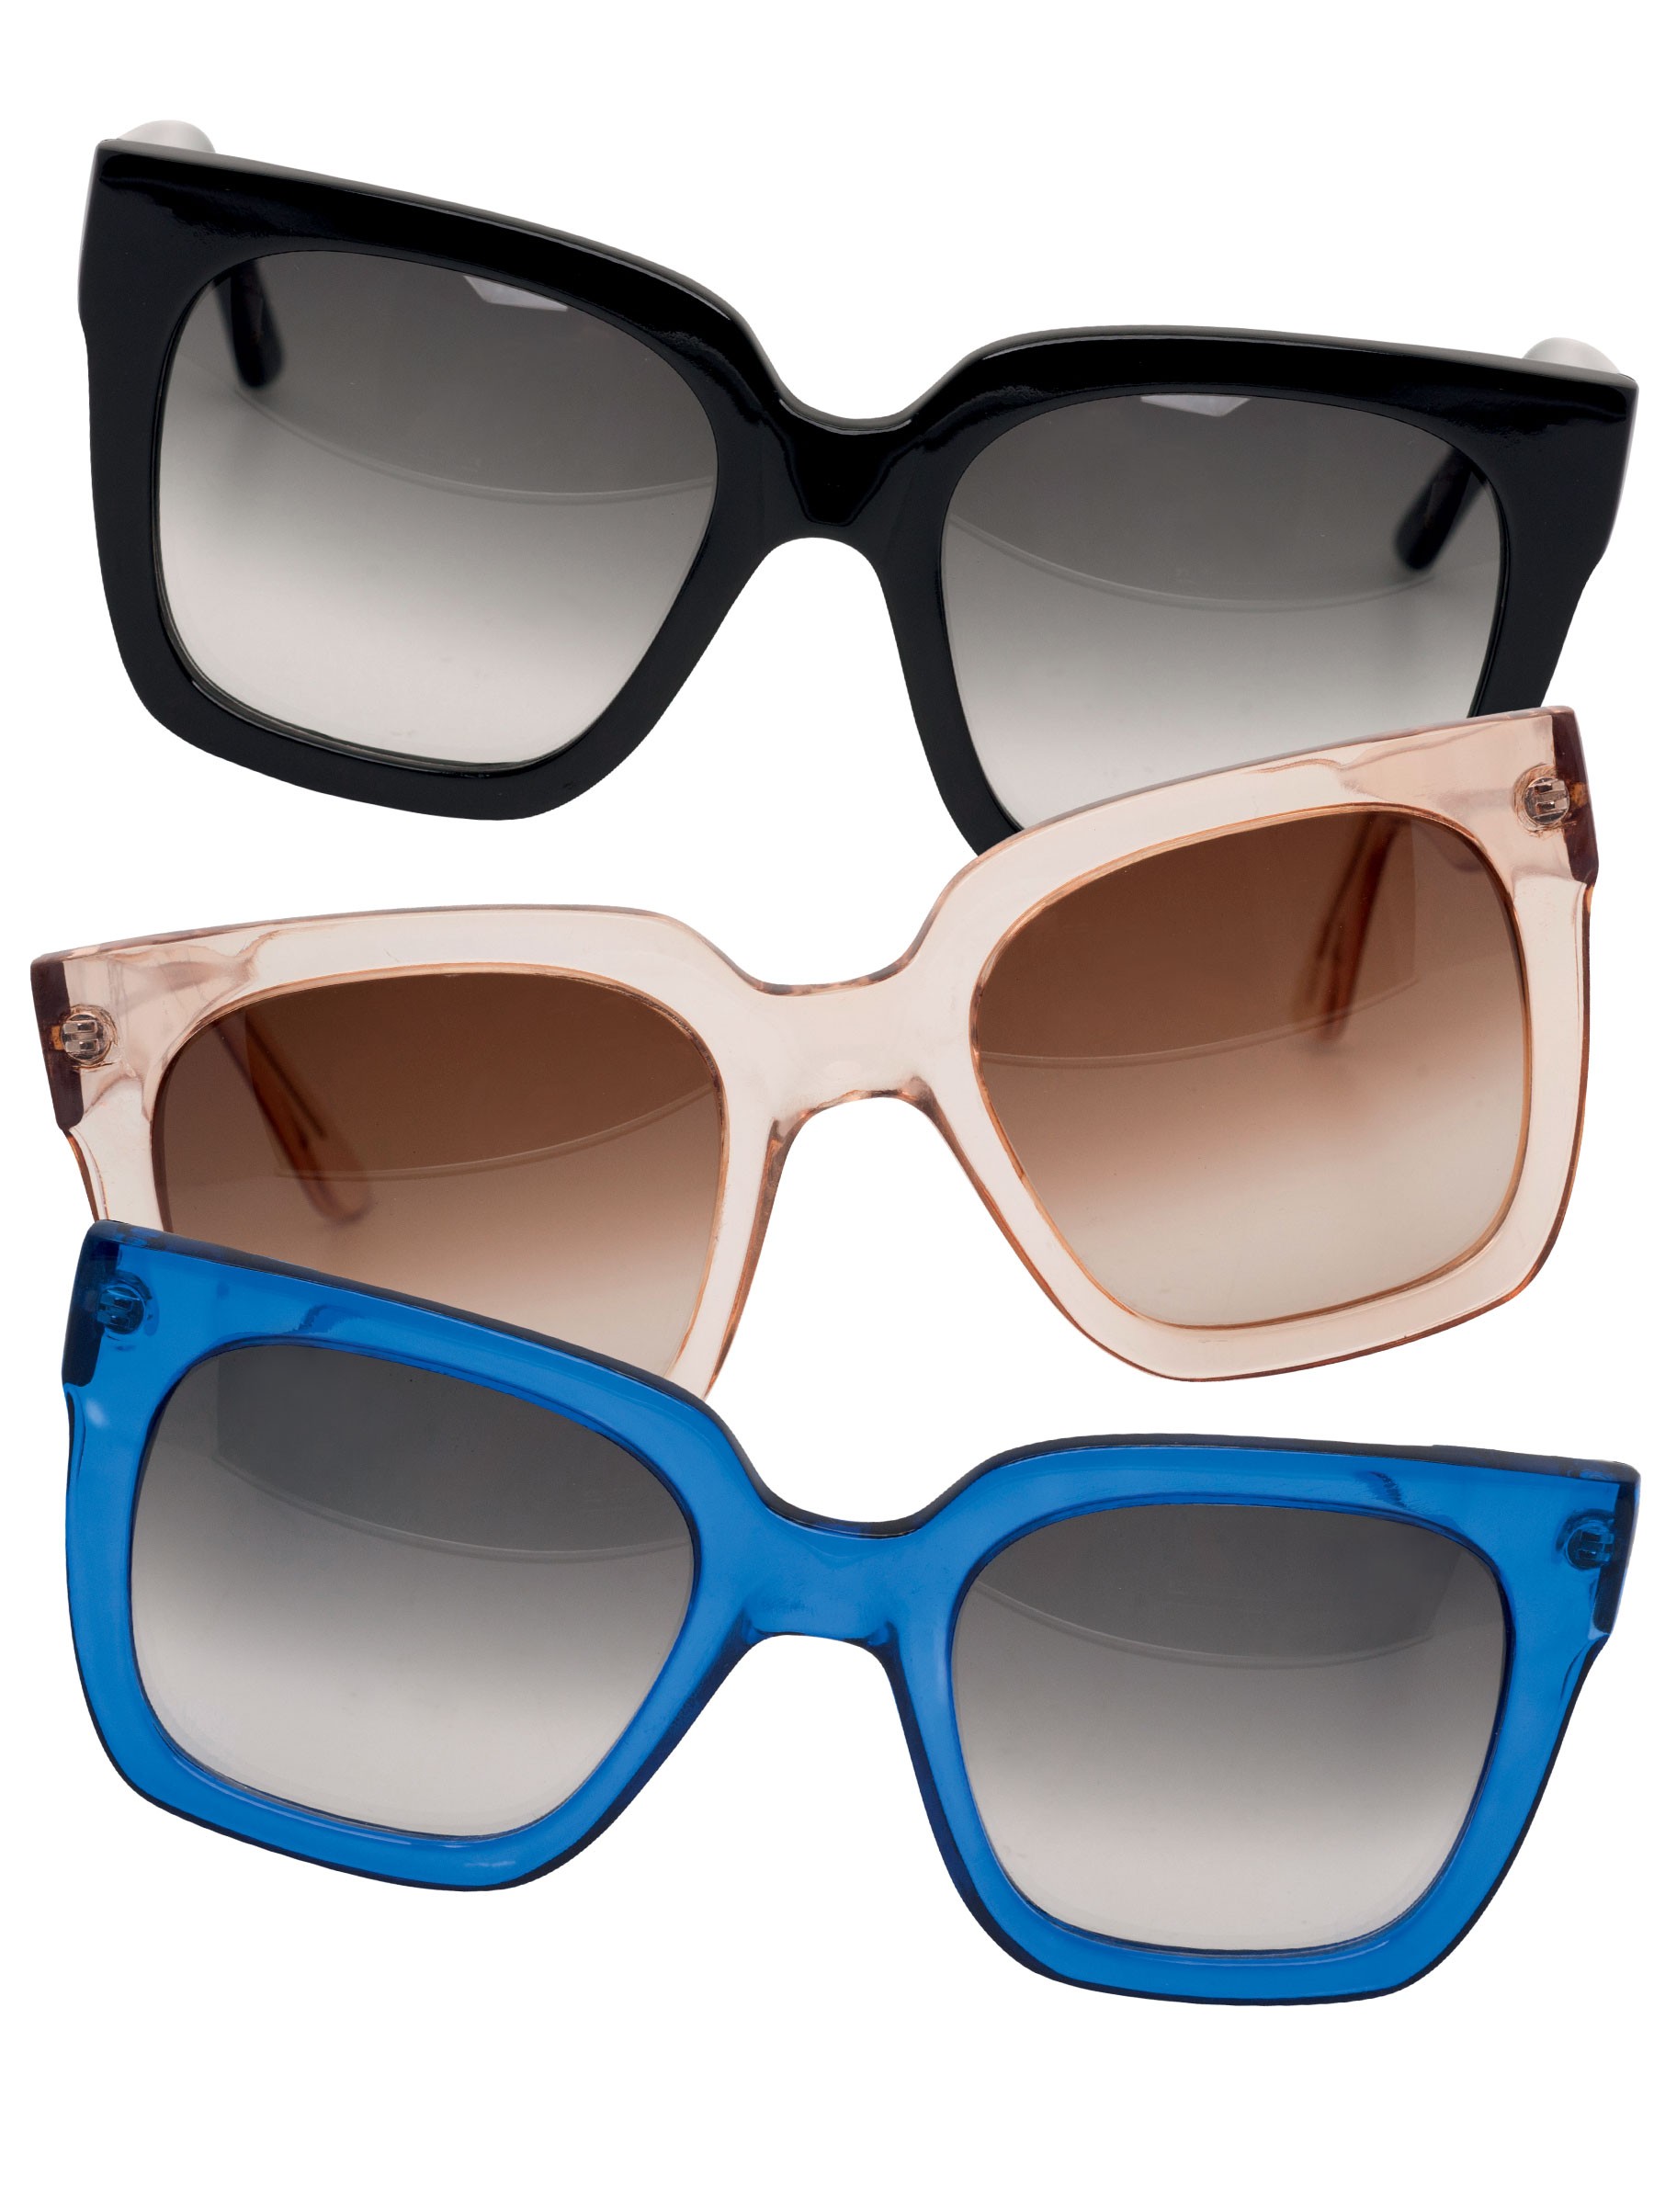 Os óculos da PatBo custam R$ 648 cada (Foto: Reprodução/Vogue Brasil)